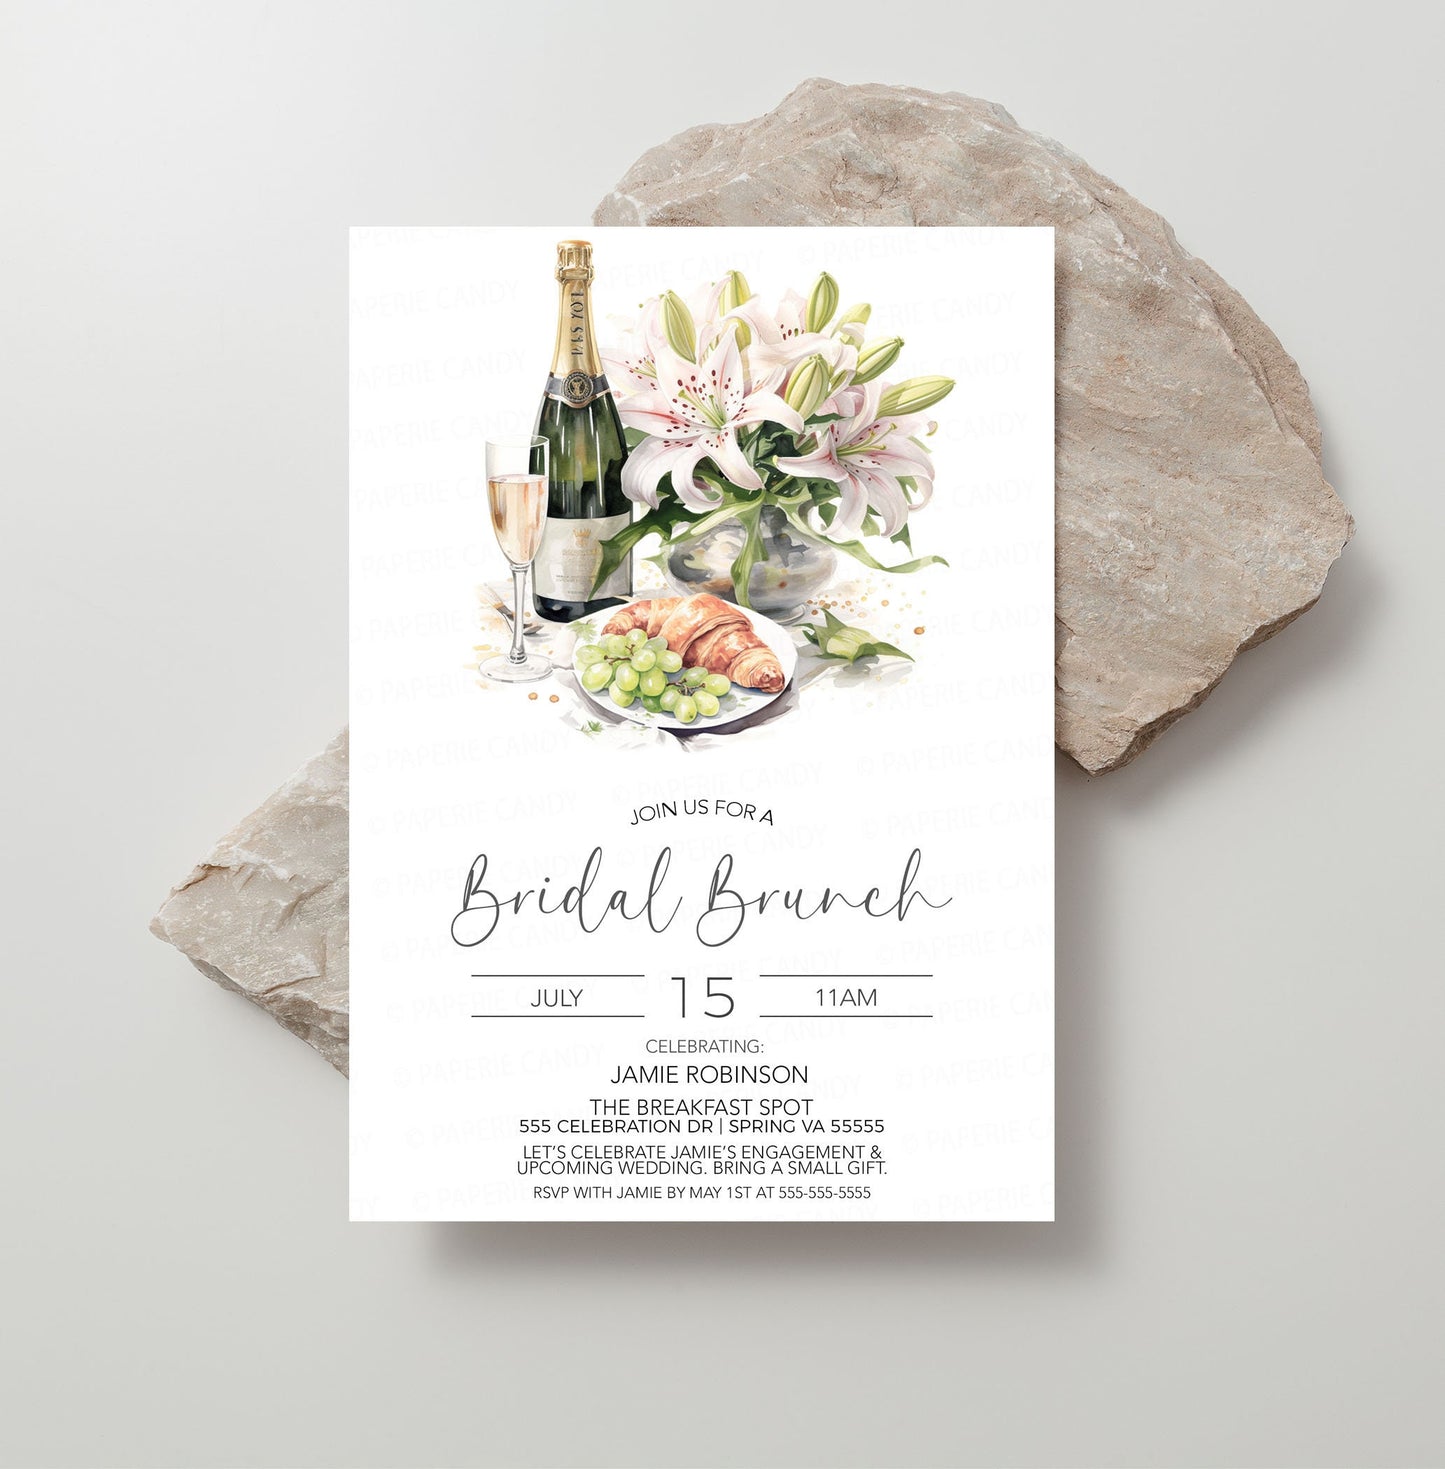 Bridal Brunch Invitation, Engagement Brunch Invite, Morning After Wedding Brunch, Champagne Bridal Shower, Wedding Rehearsal Brunch Editable